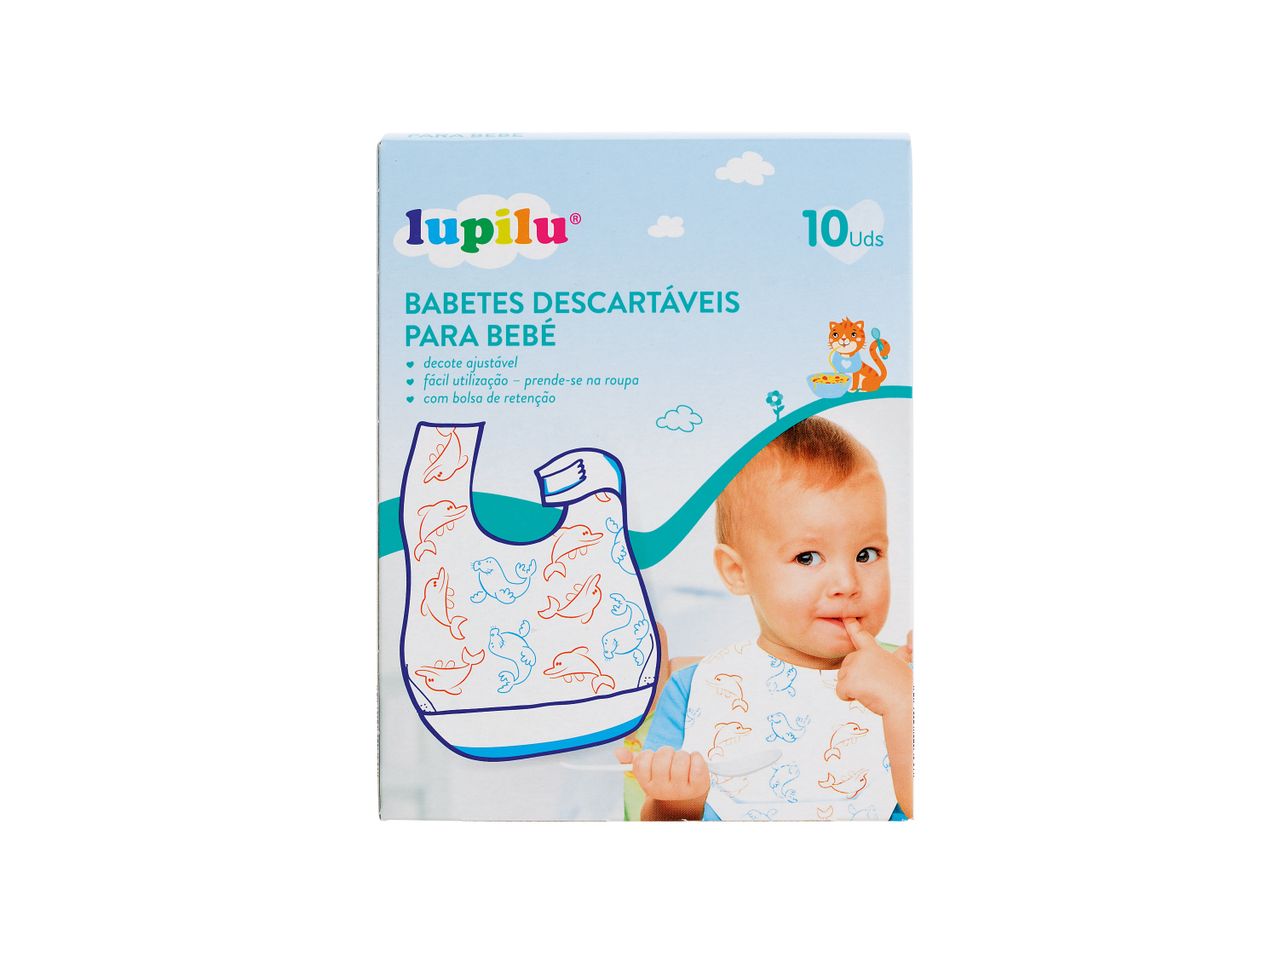 Ver empliada: Lupilu® Artigos de Higiene para Bebé - Imagem 1